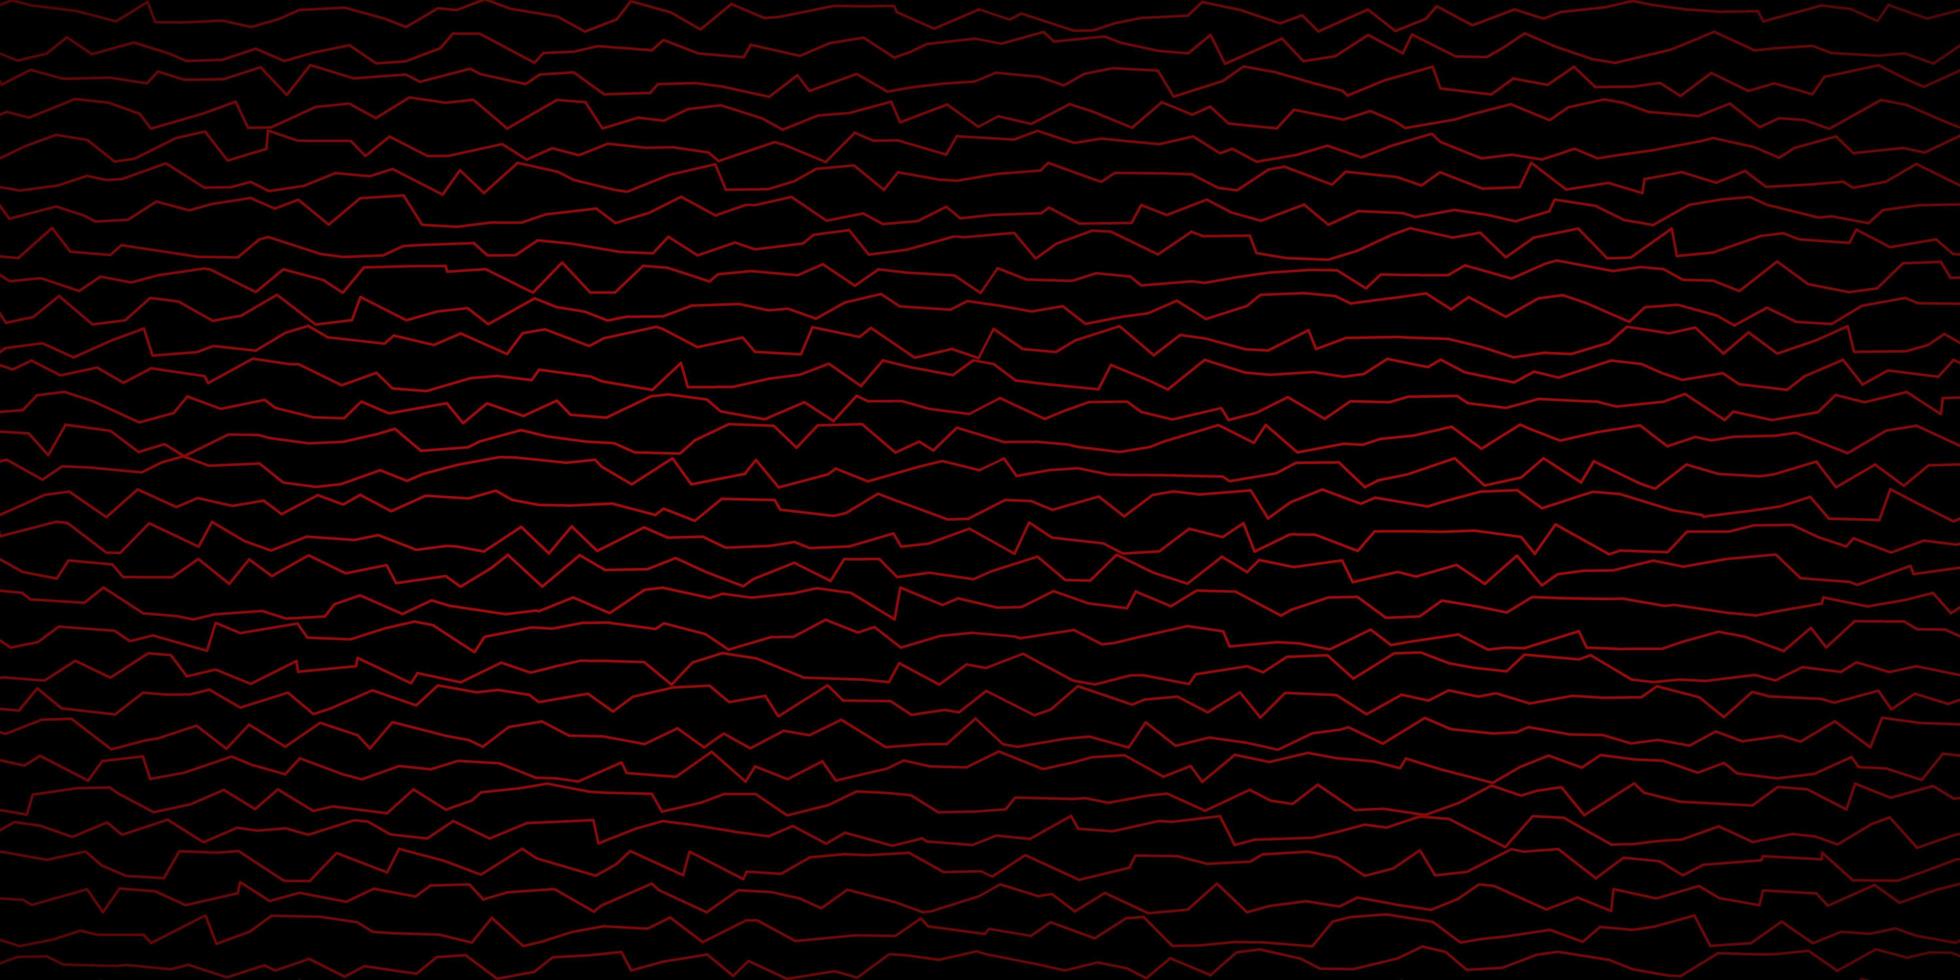 sfondo vettoriale rosso scuro con linee piegate.